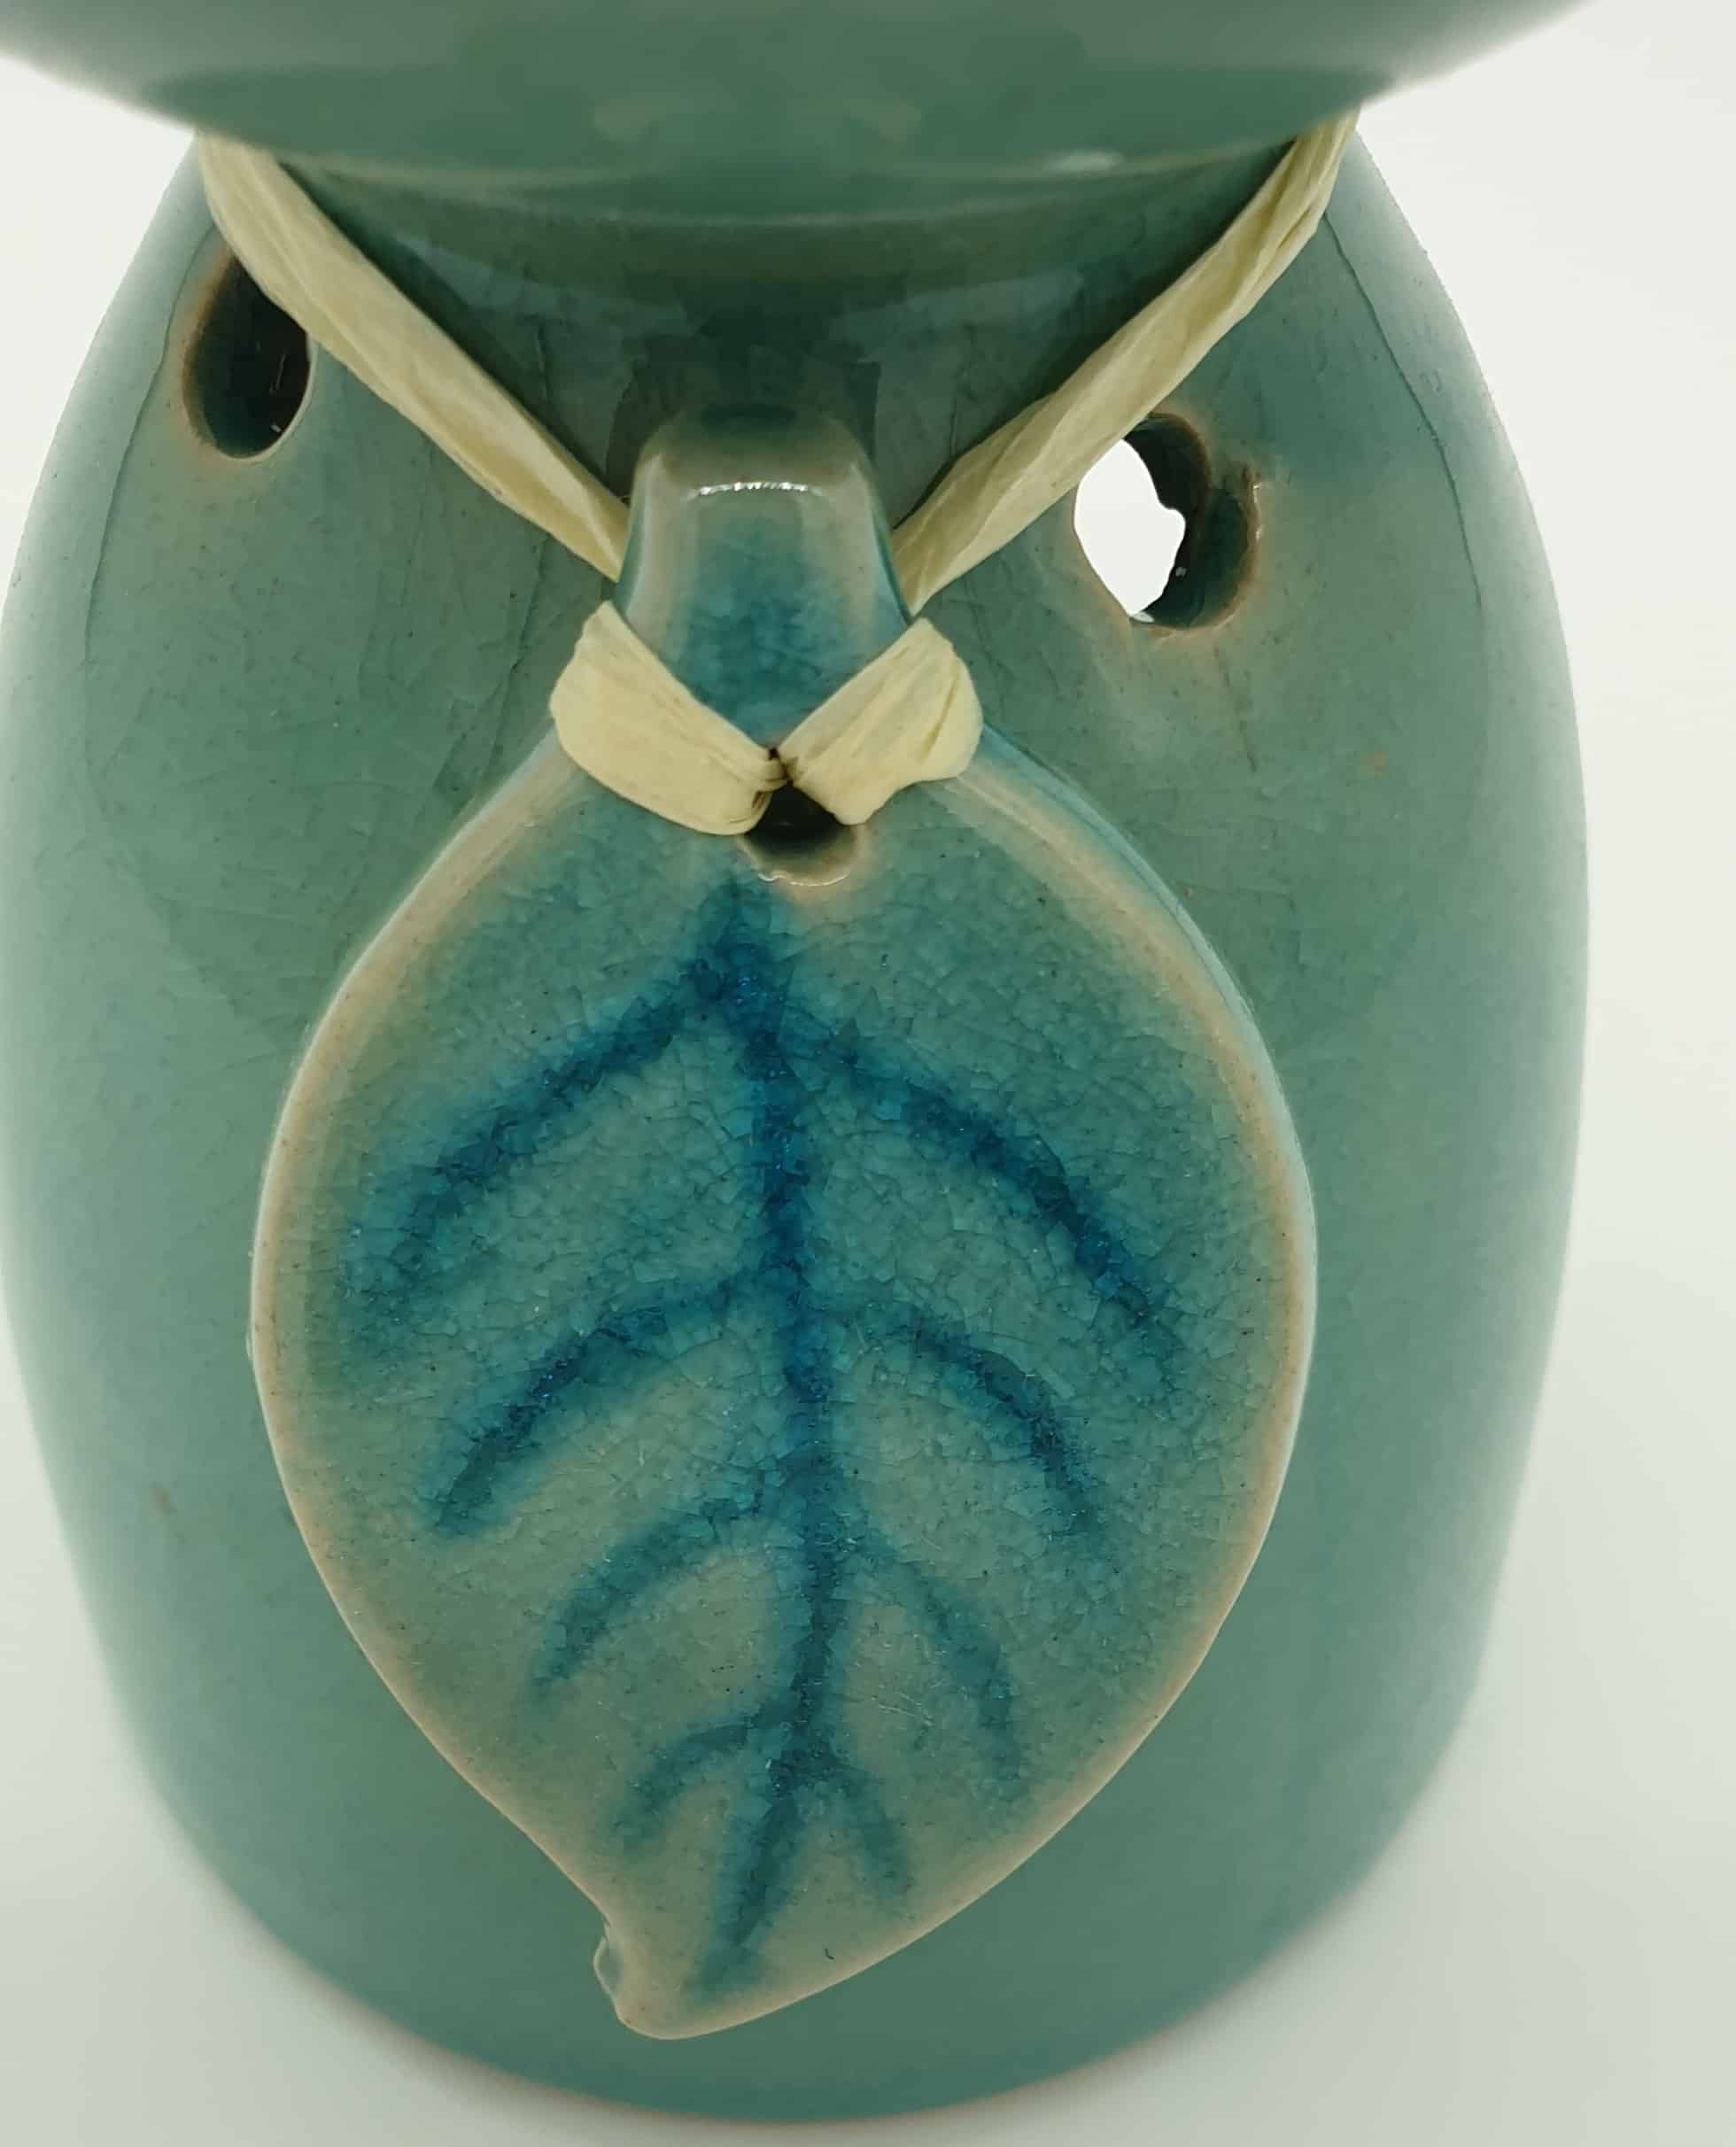 ceramic Oil Burner - Turquoise/Mint Green, Leaf Design